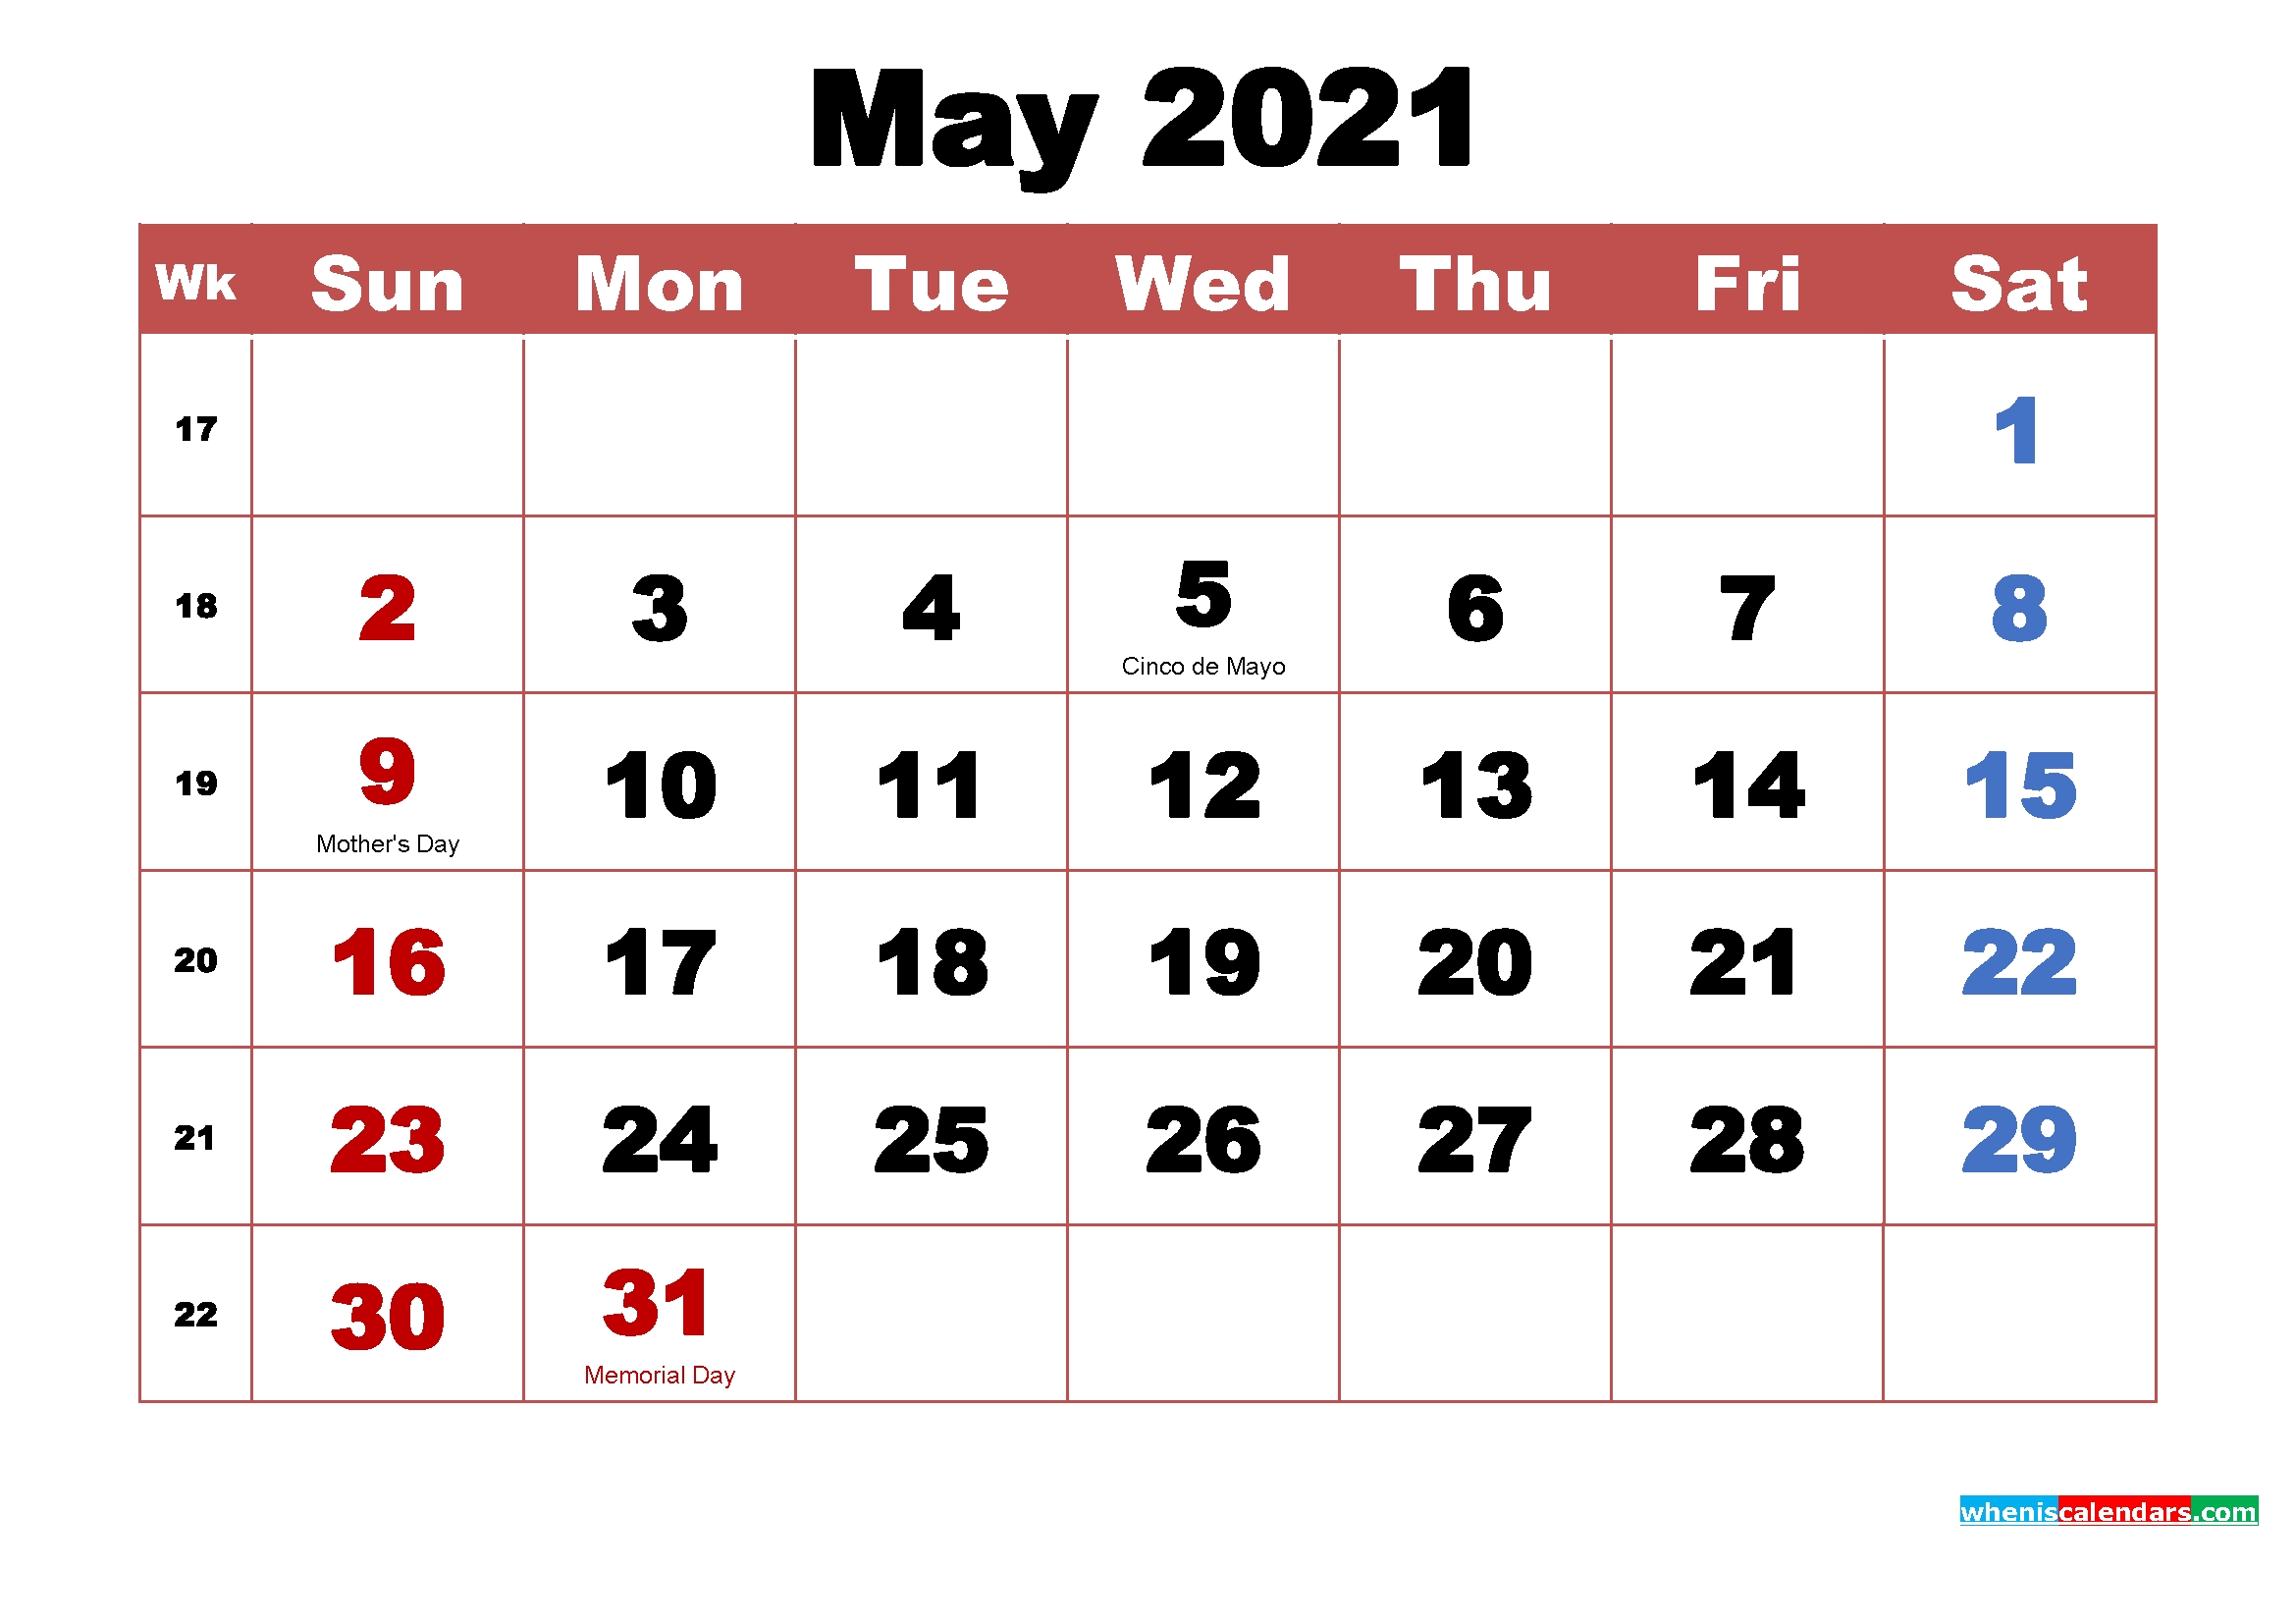 May 2021 Calendar With Holidays Printable - Free Printable